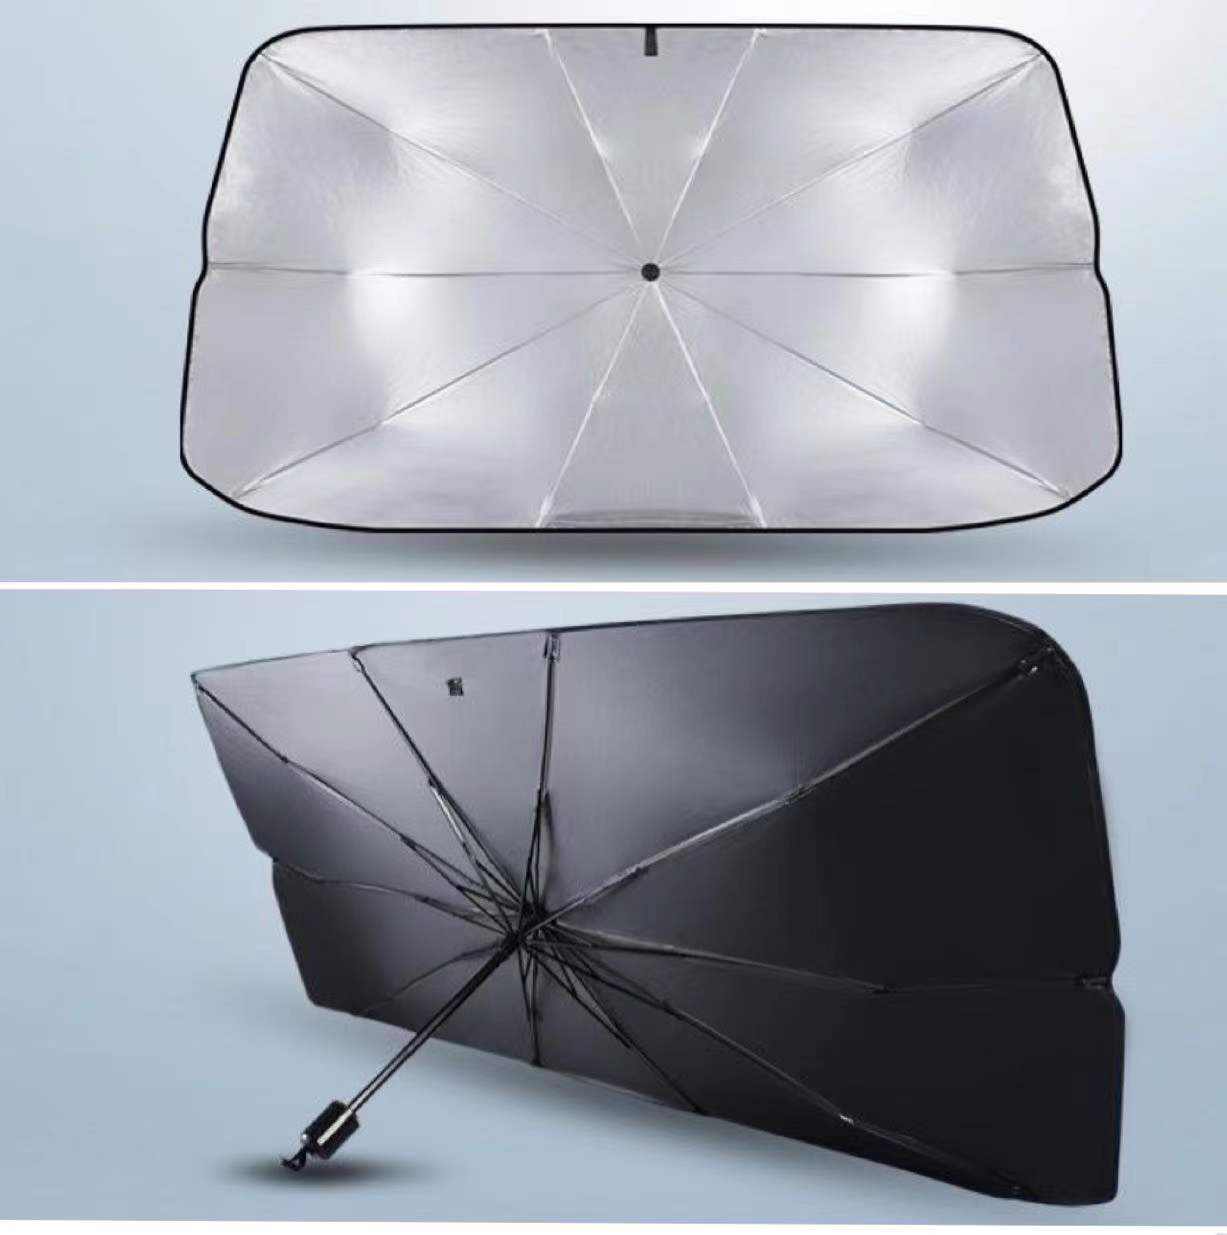 Front Window Car Windshield Sun Shade Umbrella Sunshade Sun Visor Protector  - China Car Sun Shade, Car Sunshade